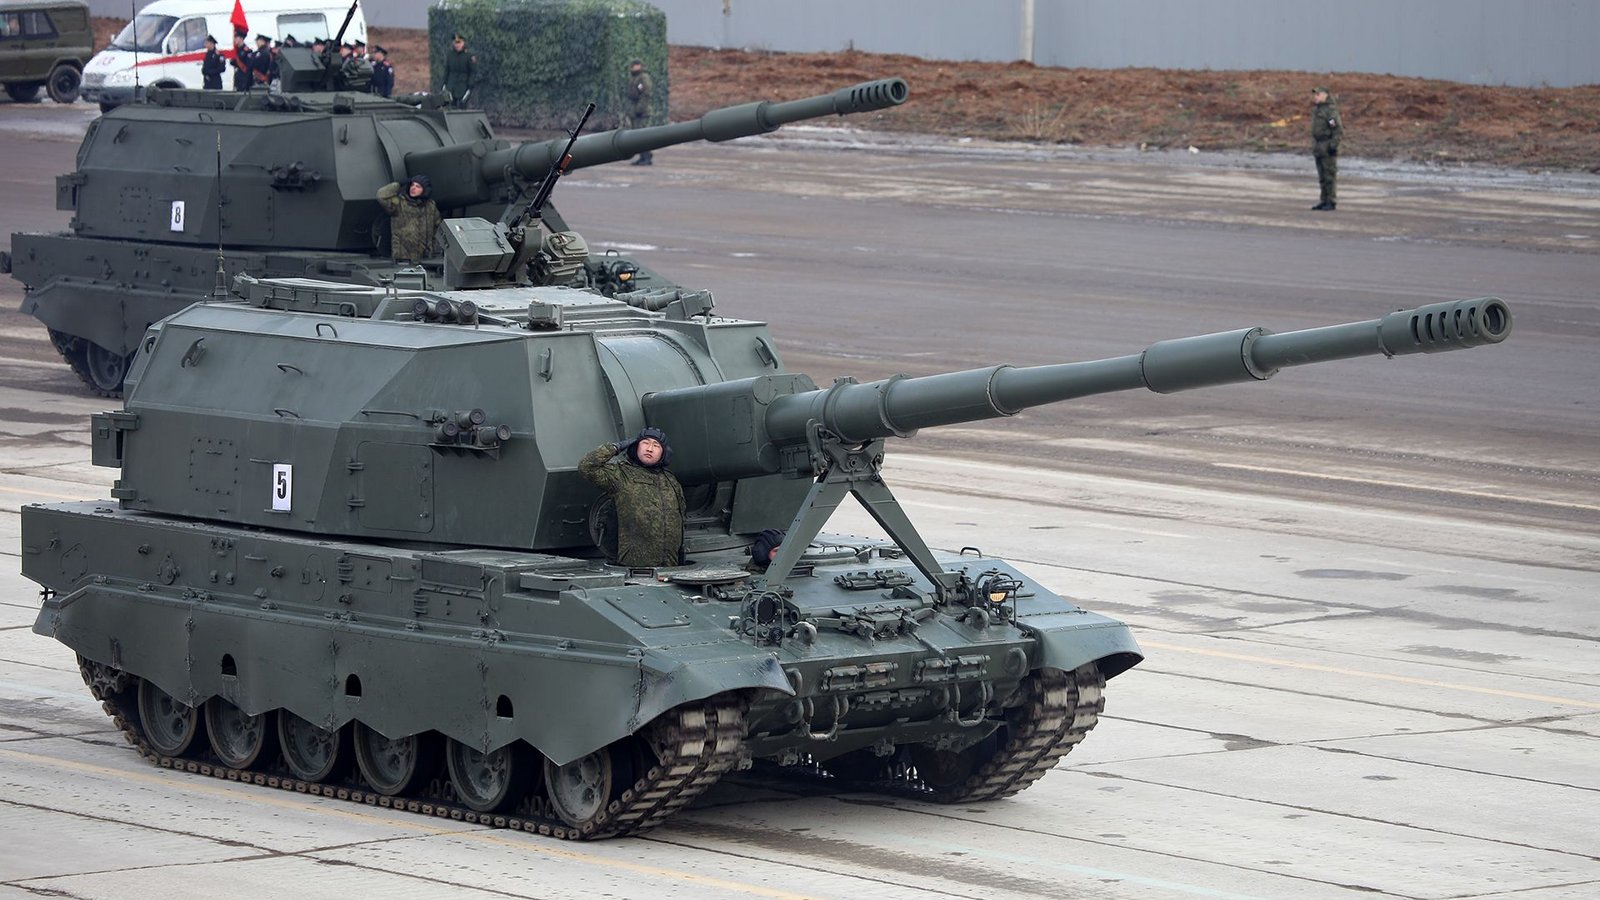 Russland: Die 2S35 Koalizija-SW ist eine russische Selbstfahrlafette. Das 2A88-Geschütz ist in einem unbemannten Turm installiert. In der späteren Serienausführung soll dieser auf der Armata-Panzer-Plattform montiert werden. Es wurde erstmals am 9. Mai 2015 auf der Militärparade zum 70. Jahrestag des Sieges auf dem Roten Platz in Moskau der Öffentlichkeit auf dem Fahrgestell des Panzers T-90 gezeigt.Foto: Wikipedia commons/Vitaly V. Kuzmin/CC BY-SA 3.0